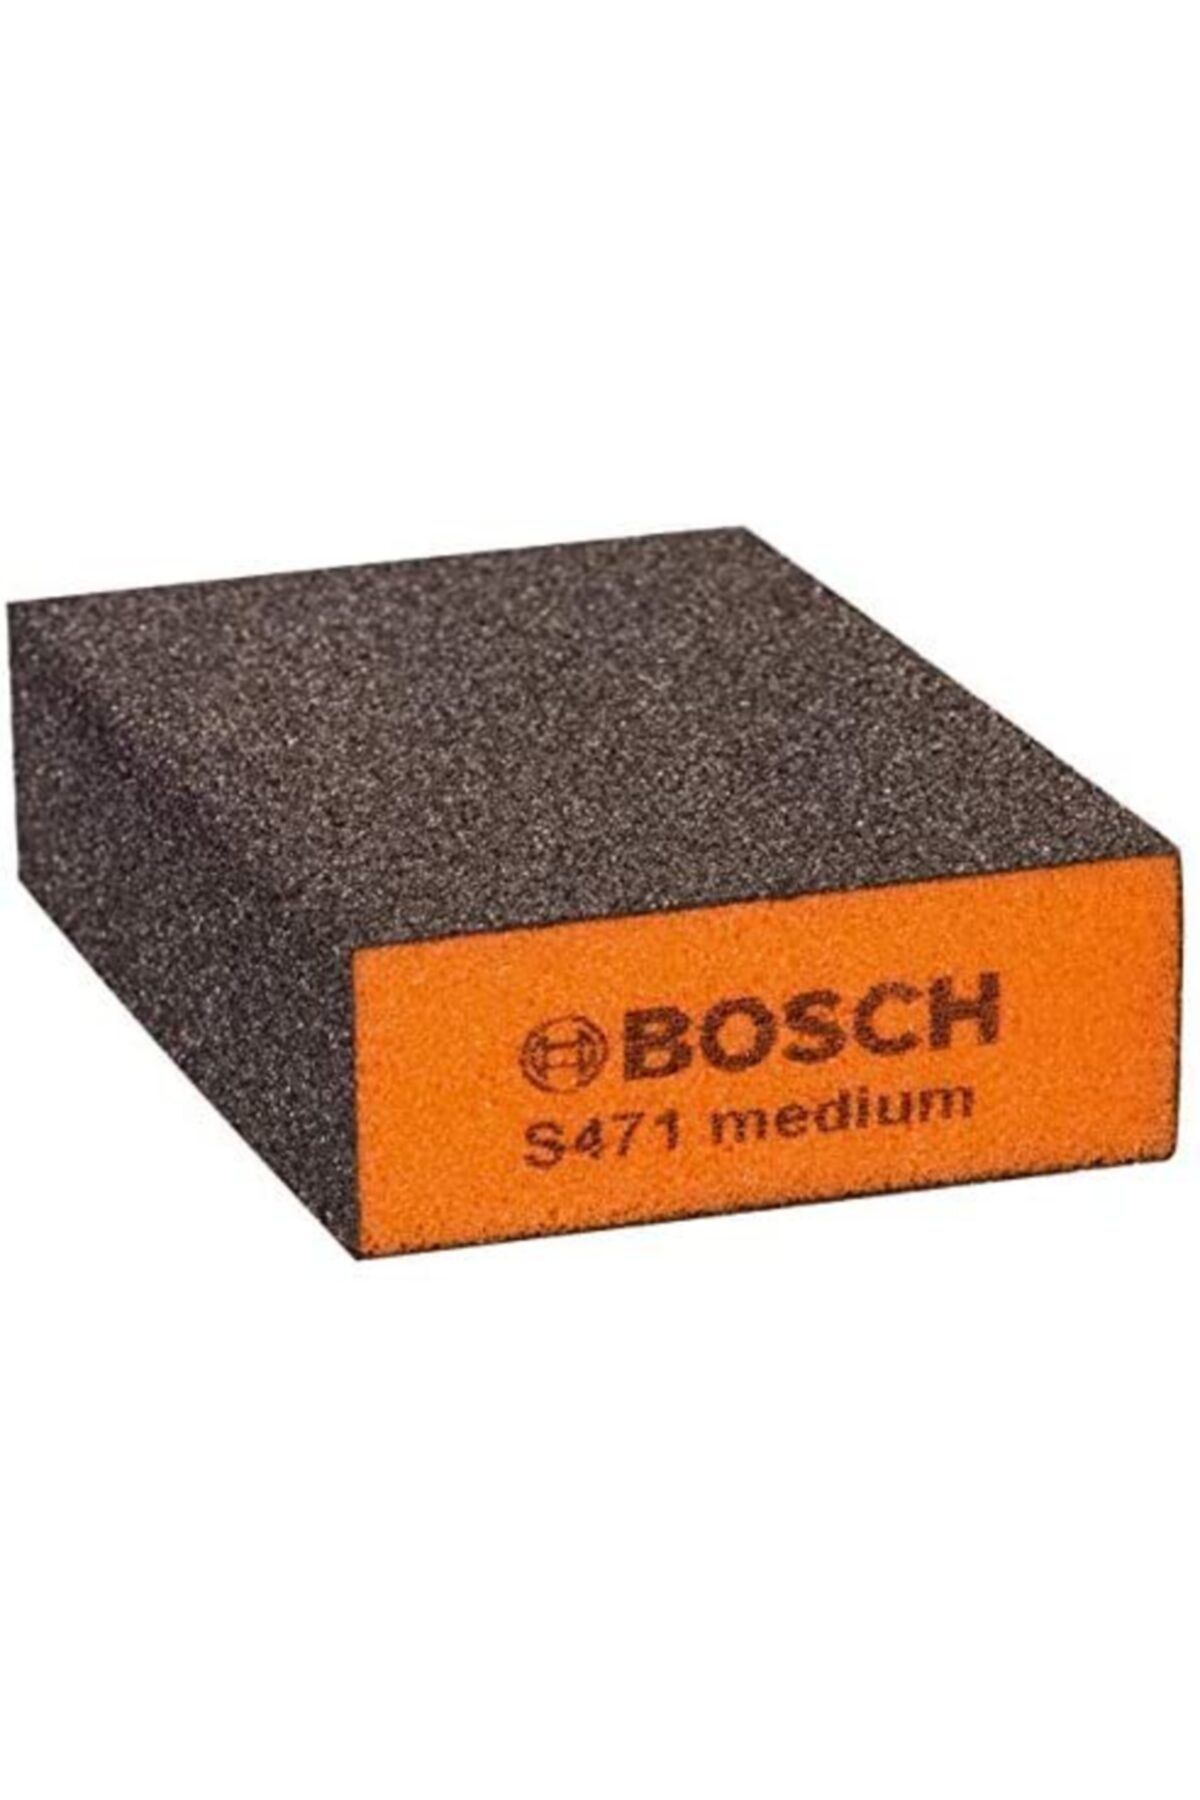 Bosch S471 Medium Takoz Sünger Zımpara Orta Kalınlık Turuncu